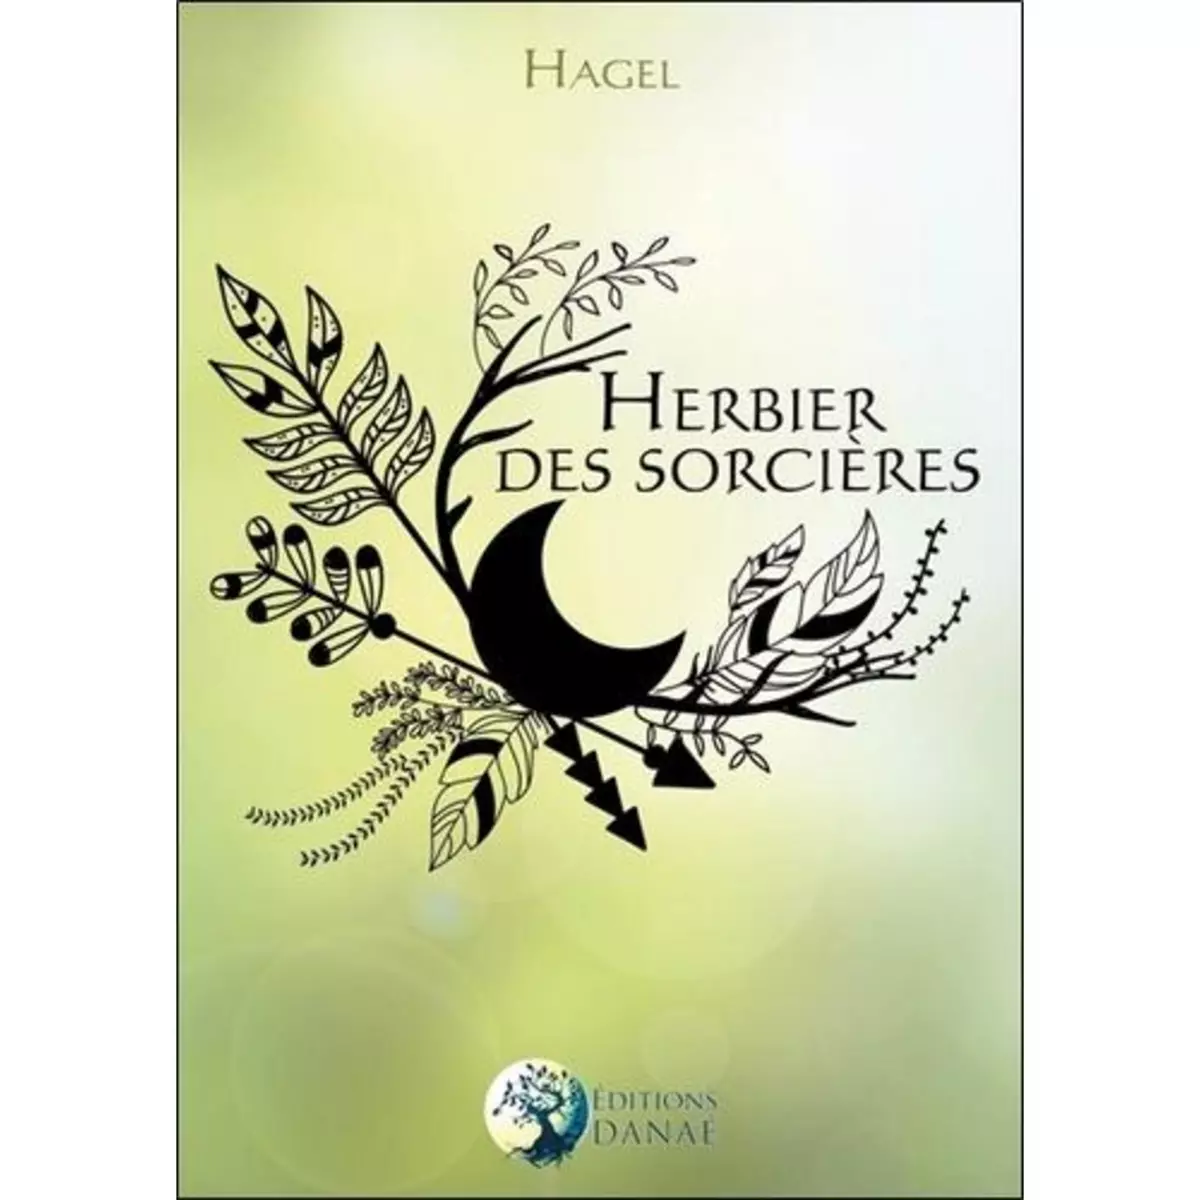  HERBIER DES SORCIERES, Hagel